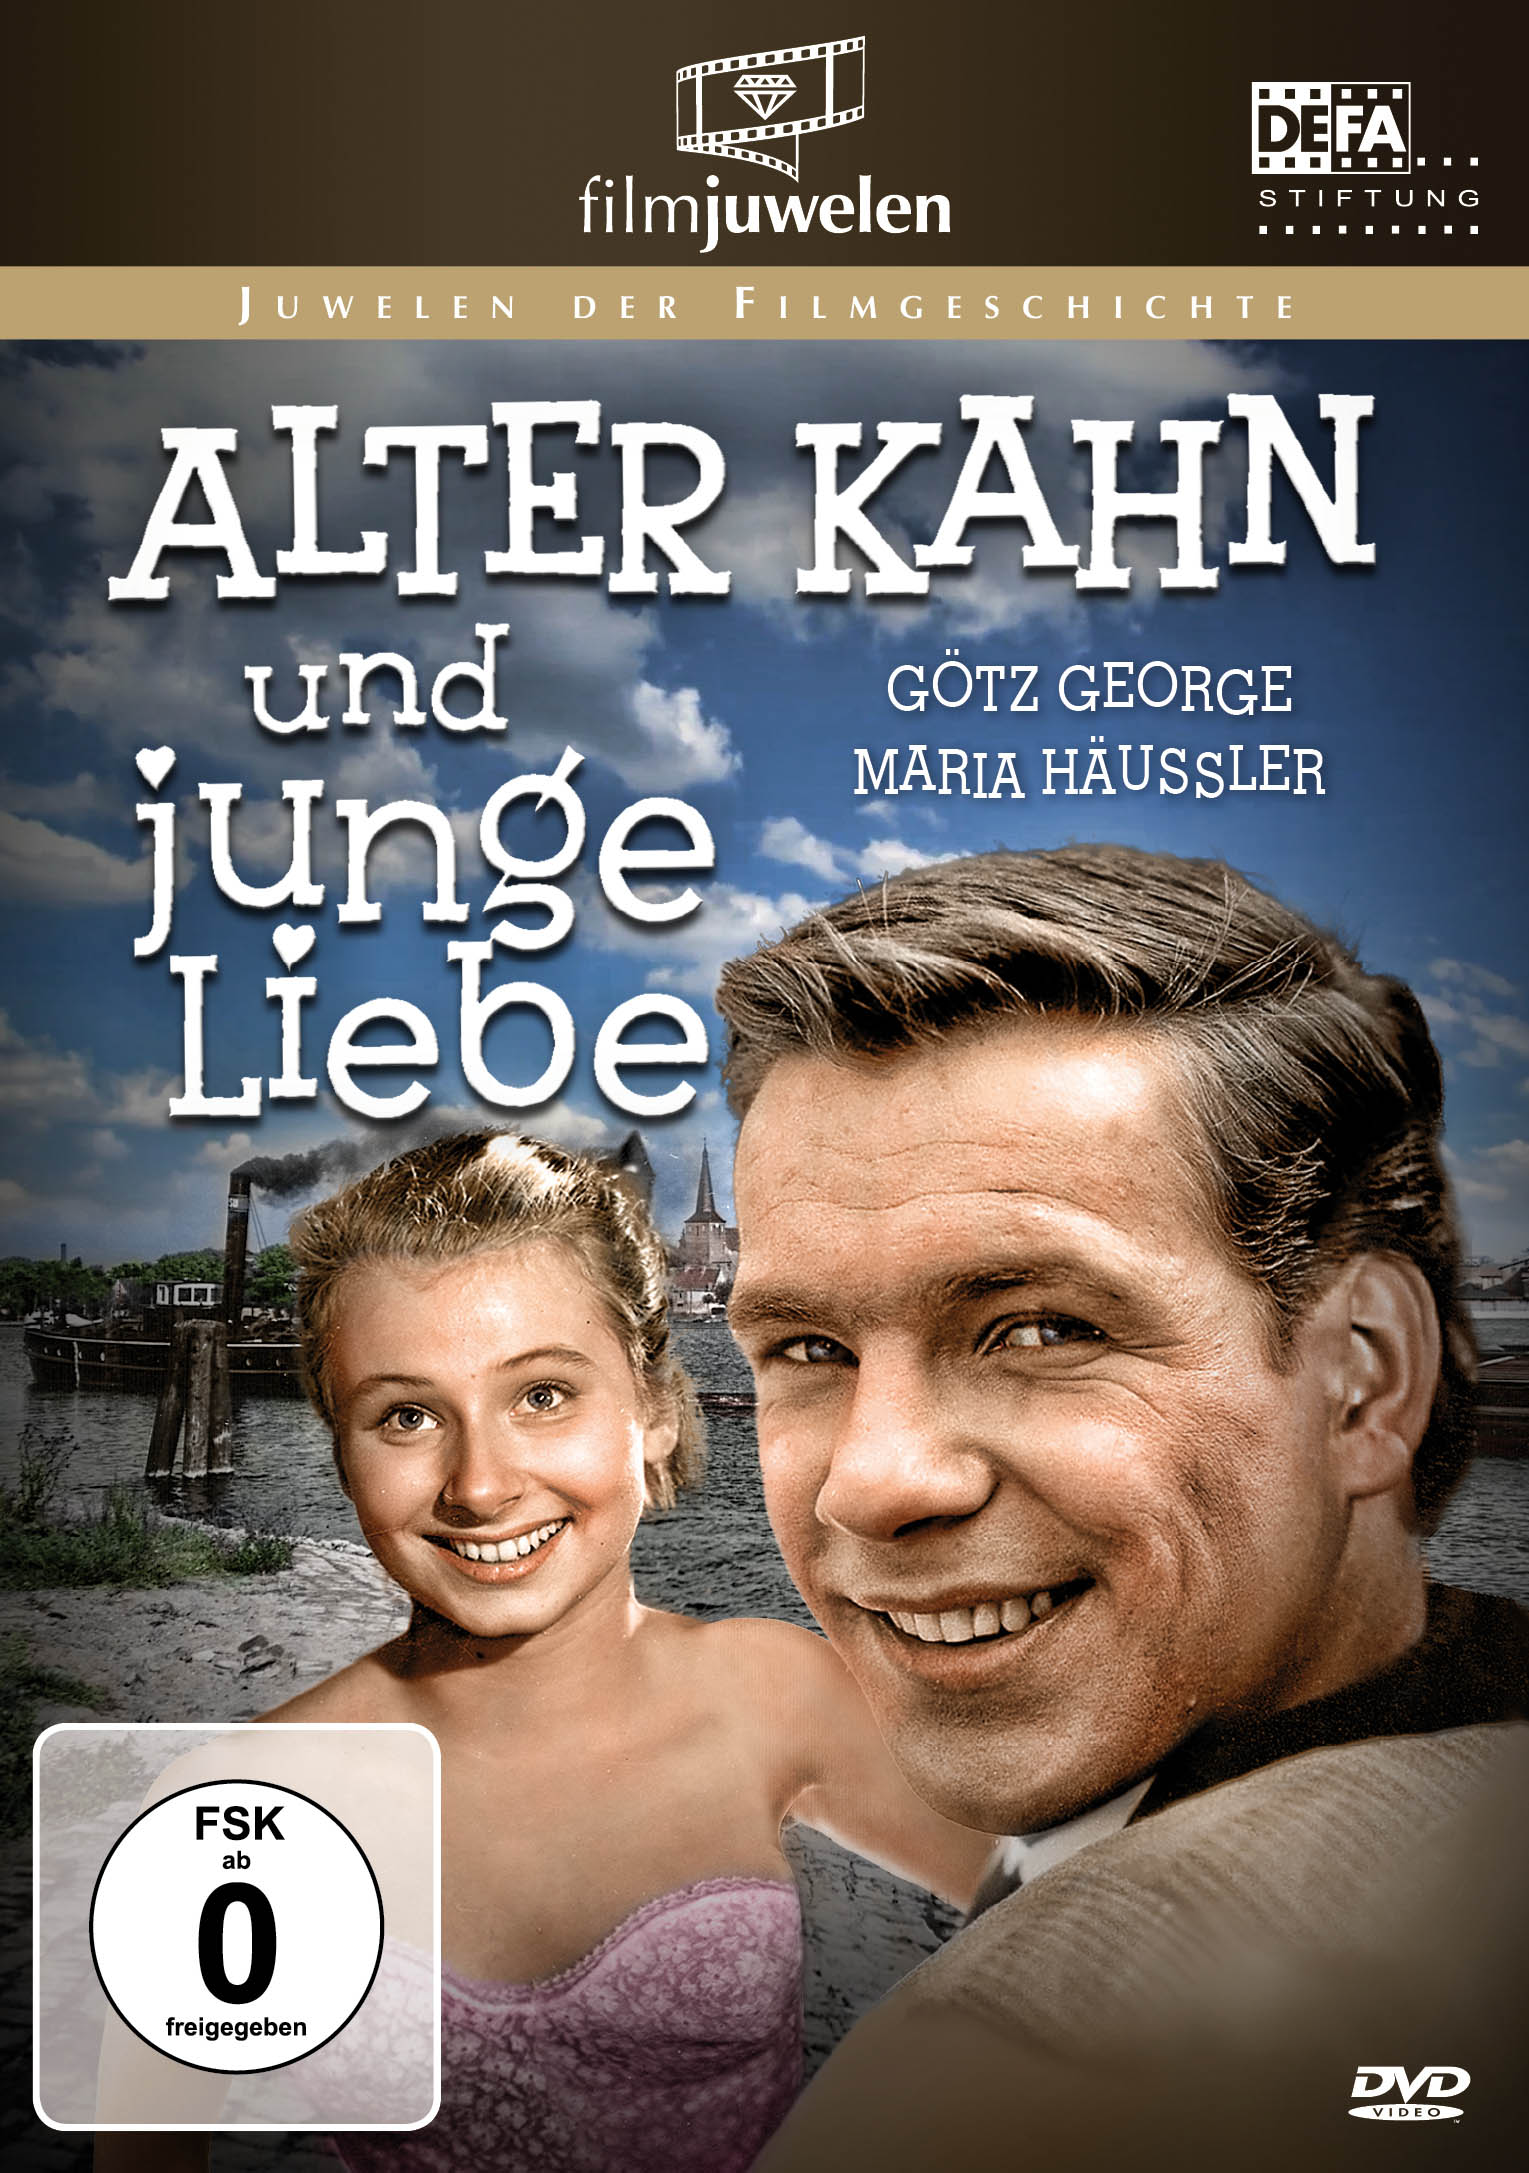 Liebe und Kahn (Goetz DVD junge Alter